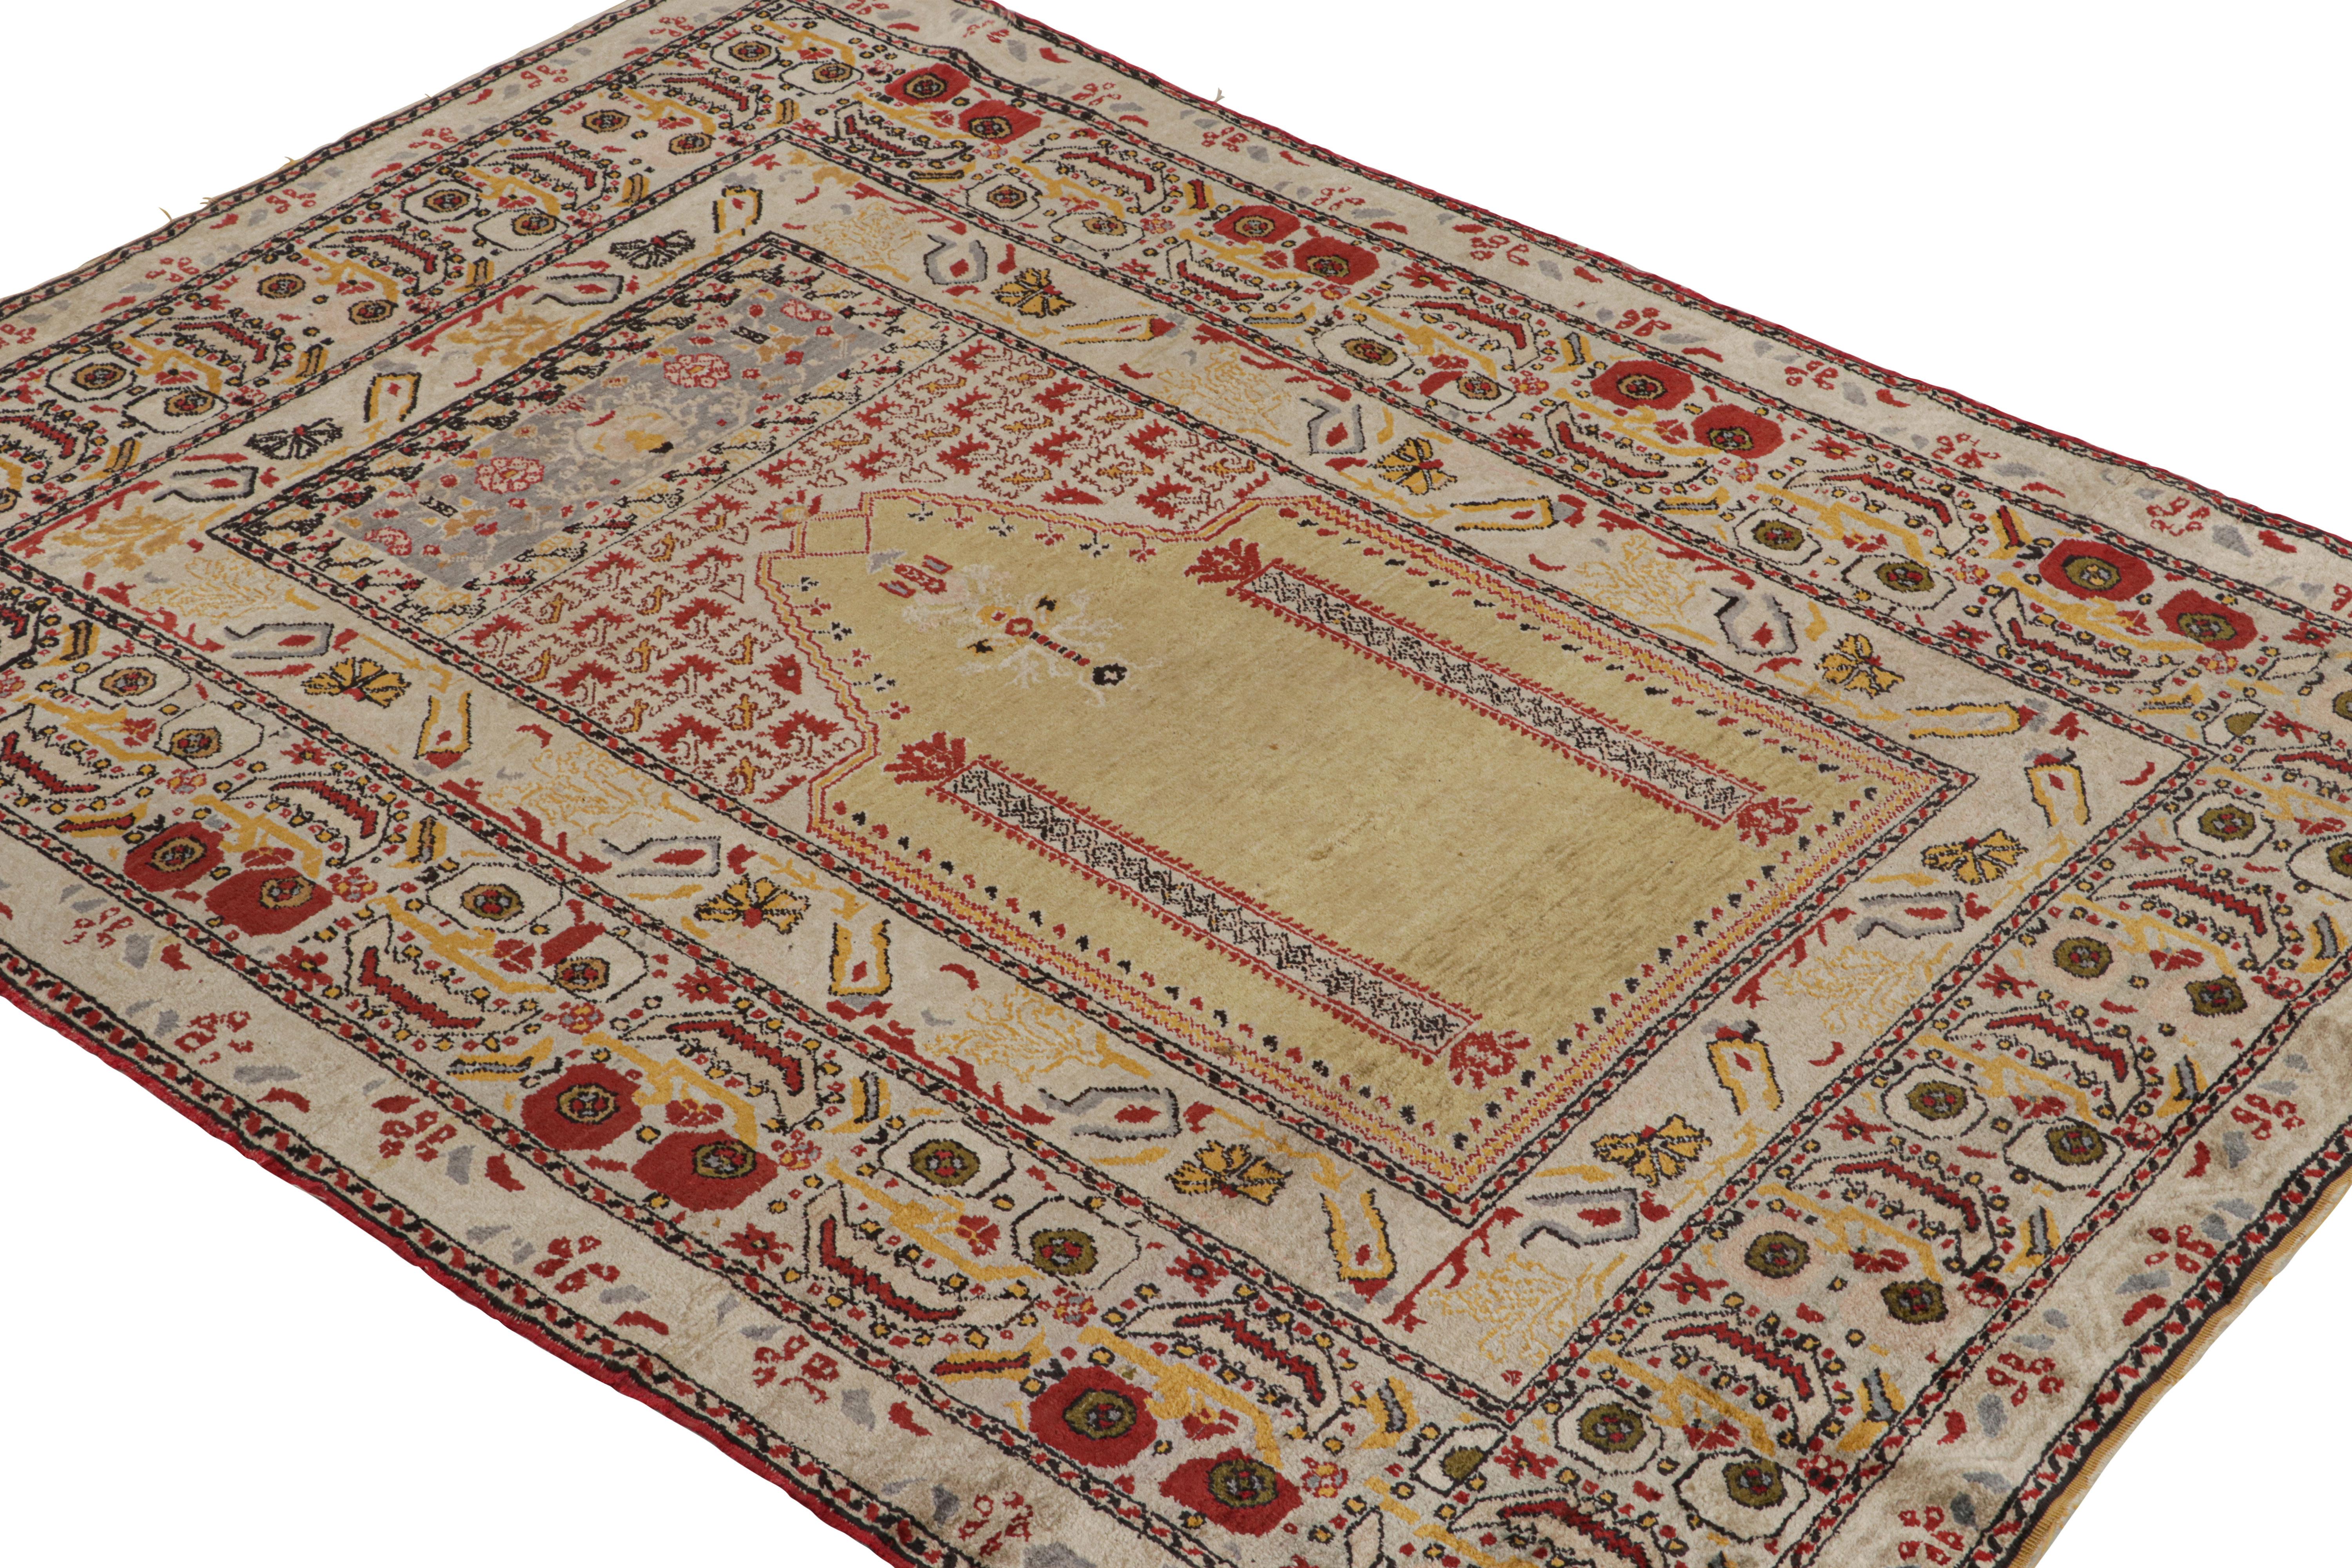 Noué à la main en soie, ce tapis Mihrab turc ancien de 4x5 en or est une pièce très spéciale, d'une construction et d'une qualité rares pour cette provenance.  

Sur le design : 

Les connaisseurs admireront cette pièce au design royal qui